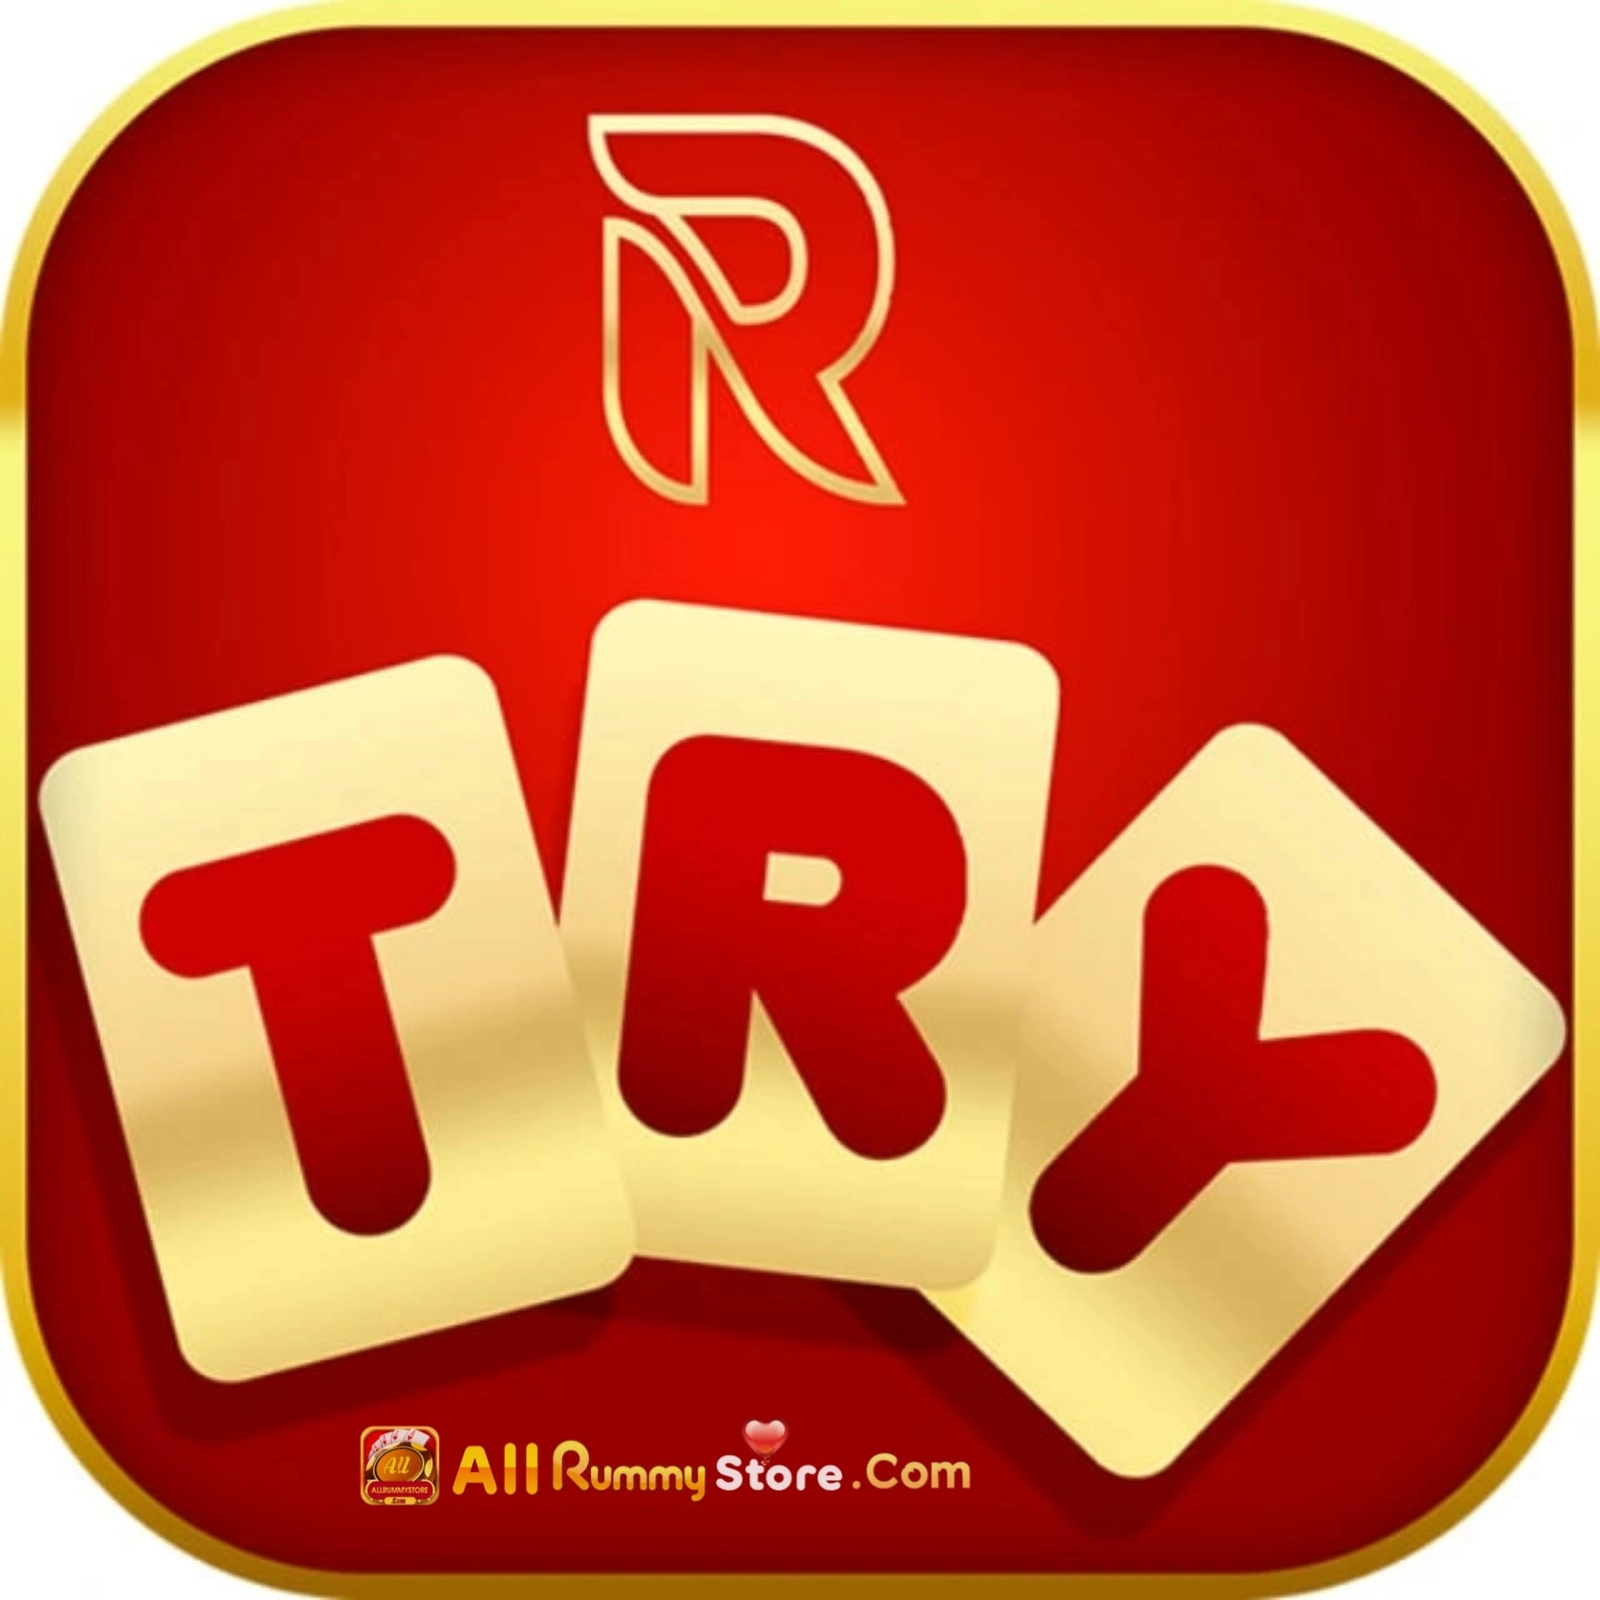 Rummy Try - All Rummy App - All Rummy Apps - RummyBonusApp